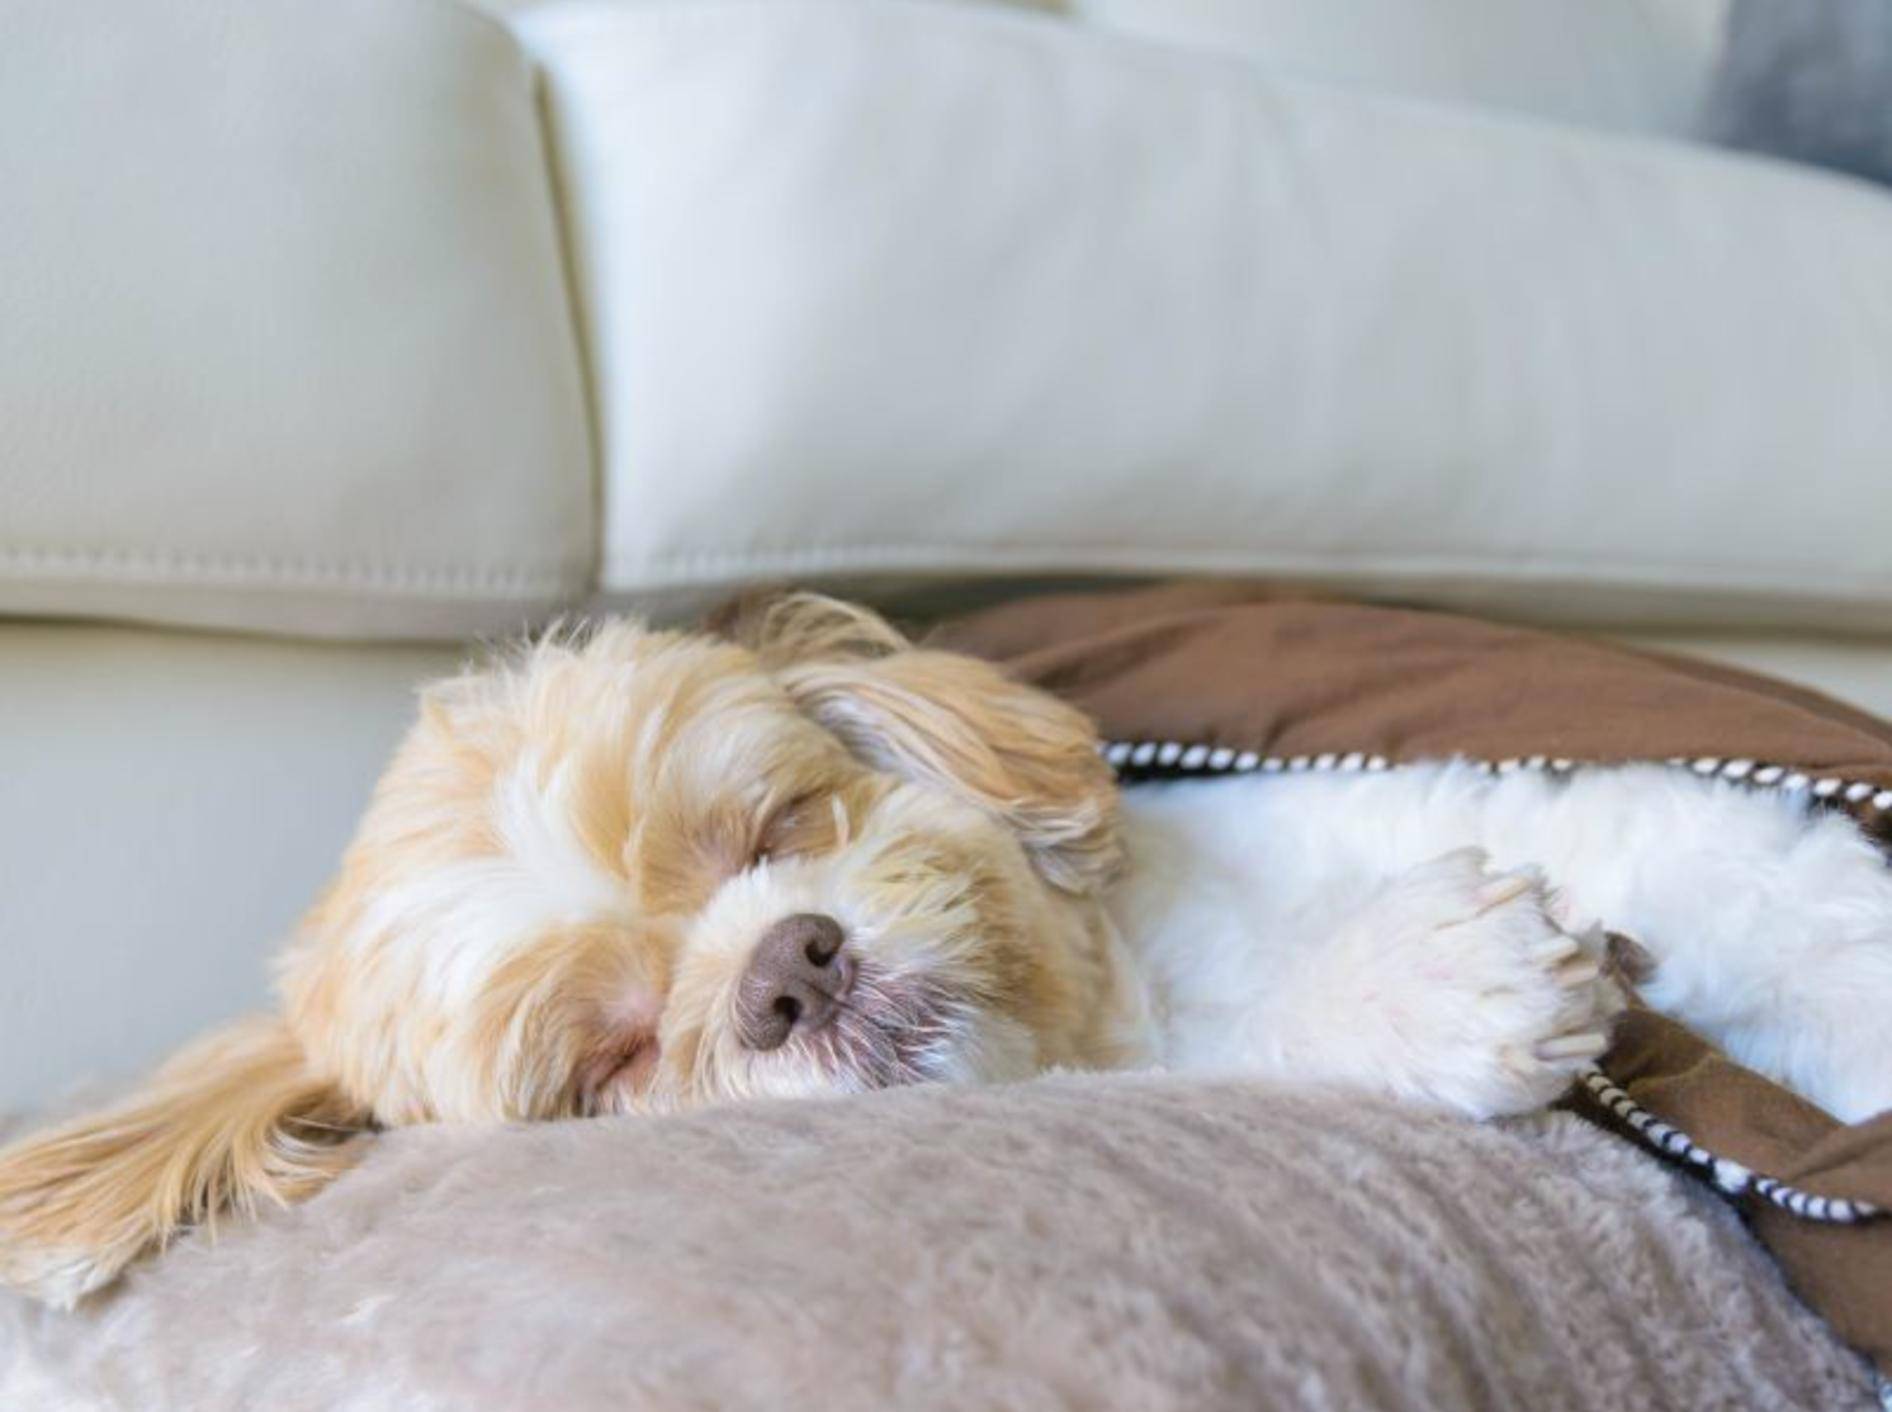 Hundekorb im Zimmer: Im Hunde-Hotel selbstverständlich – Bild: Shutterstock / Joy_enjoy